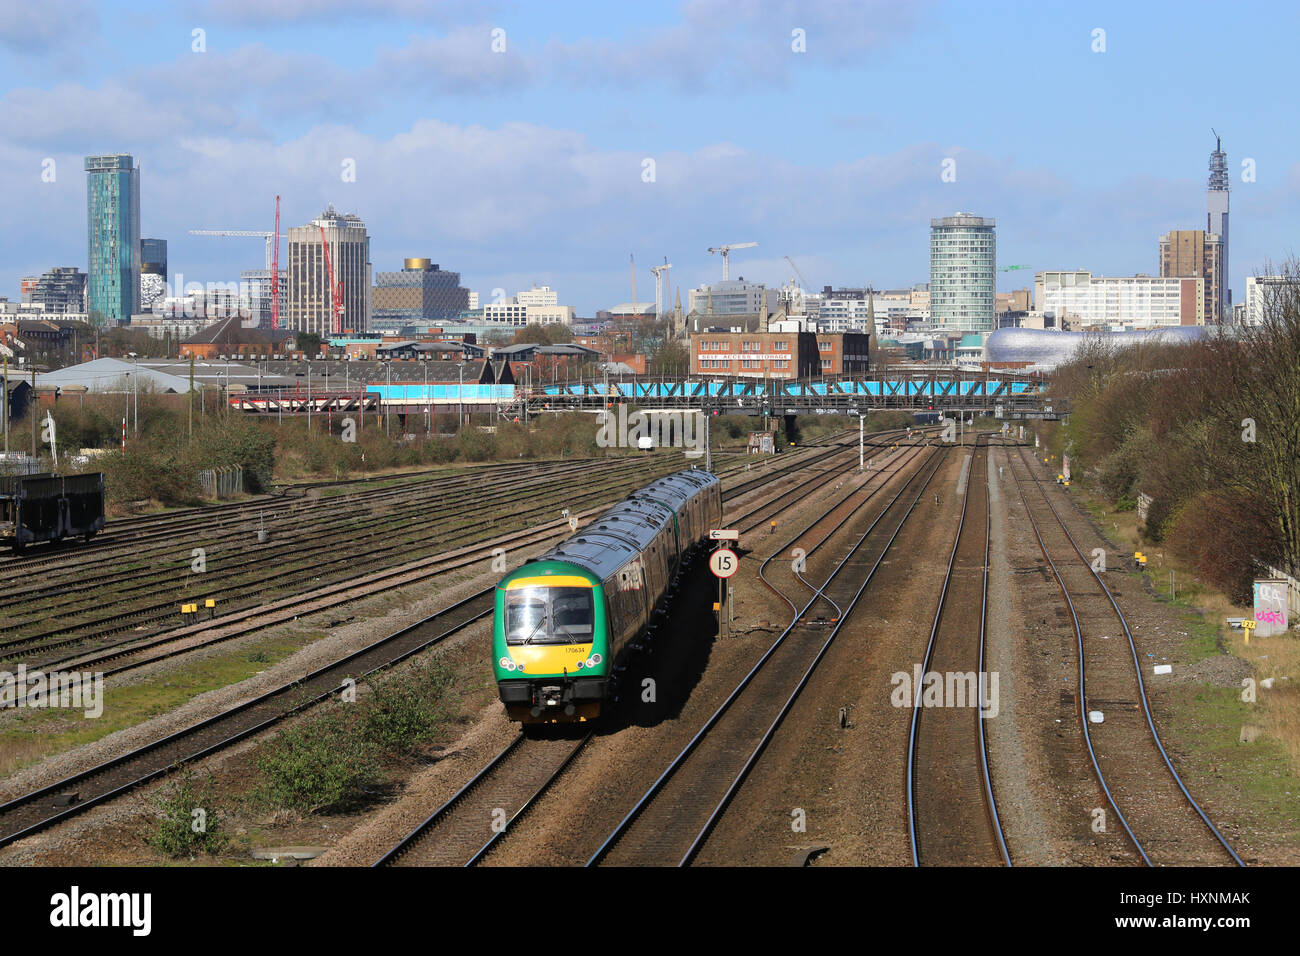 Train de voyageurs diesel de classe 170 en direction du centre-ville de Birmingham, West Midlands, Angleterre, Royaume-Uni et vue sur la ville. Banque D'Images